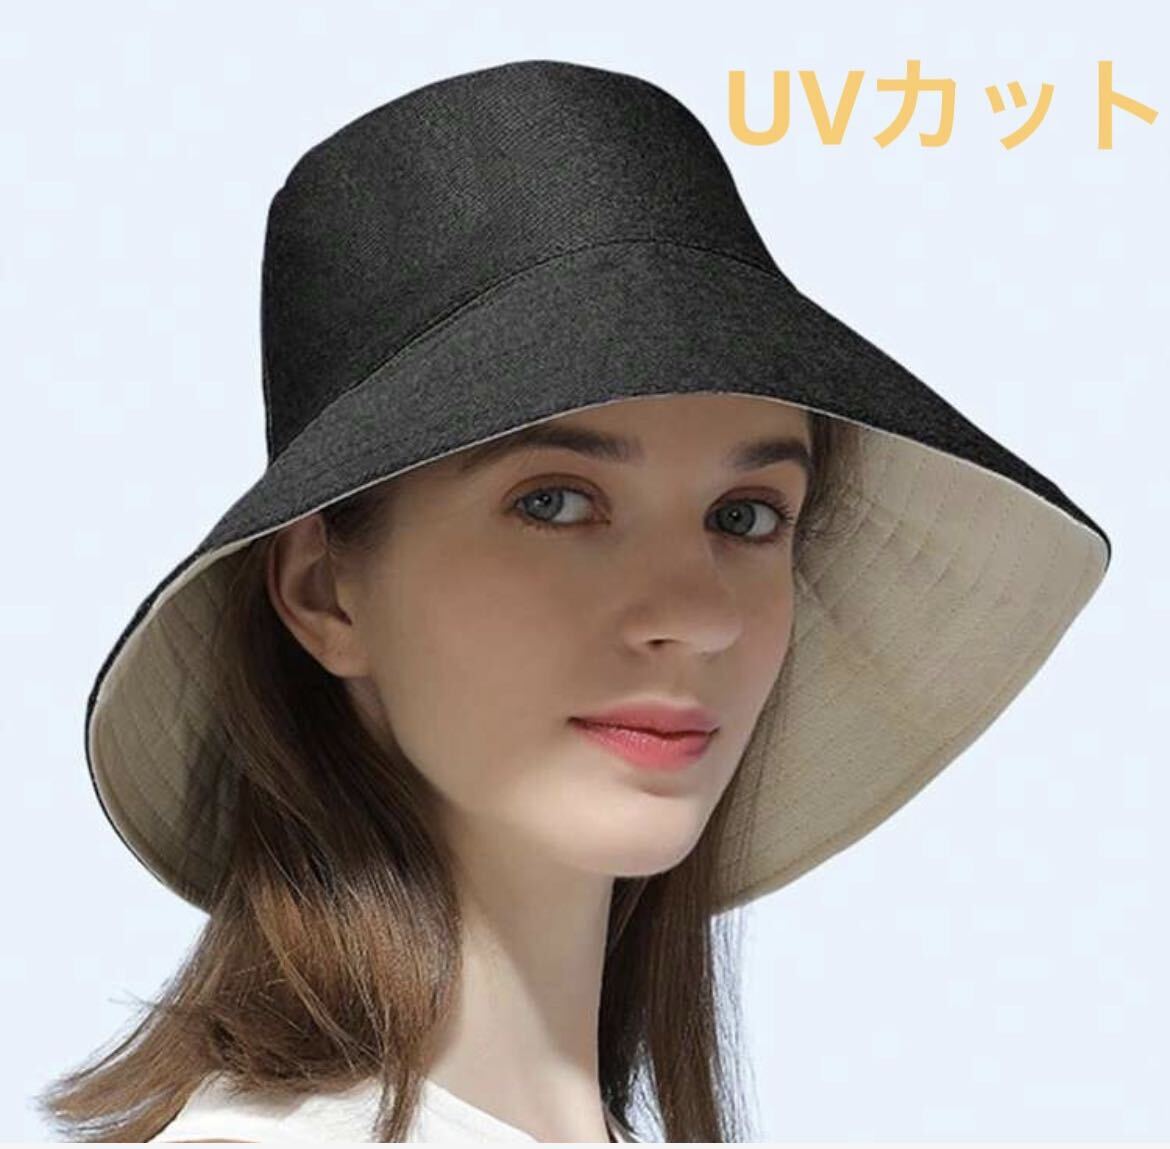 【本日限定セール】海外ブランド UVカット 紫外線対策 つば広 帽子 おしゃれ 軽量 通気性 熱中症対策 日焼け防止 ハット 黒_画像1